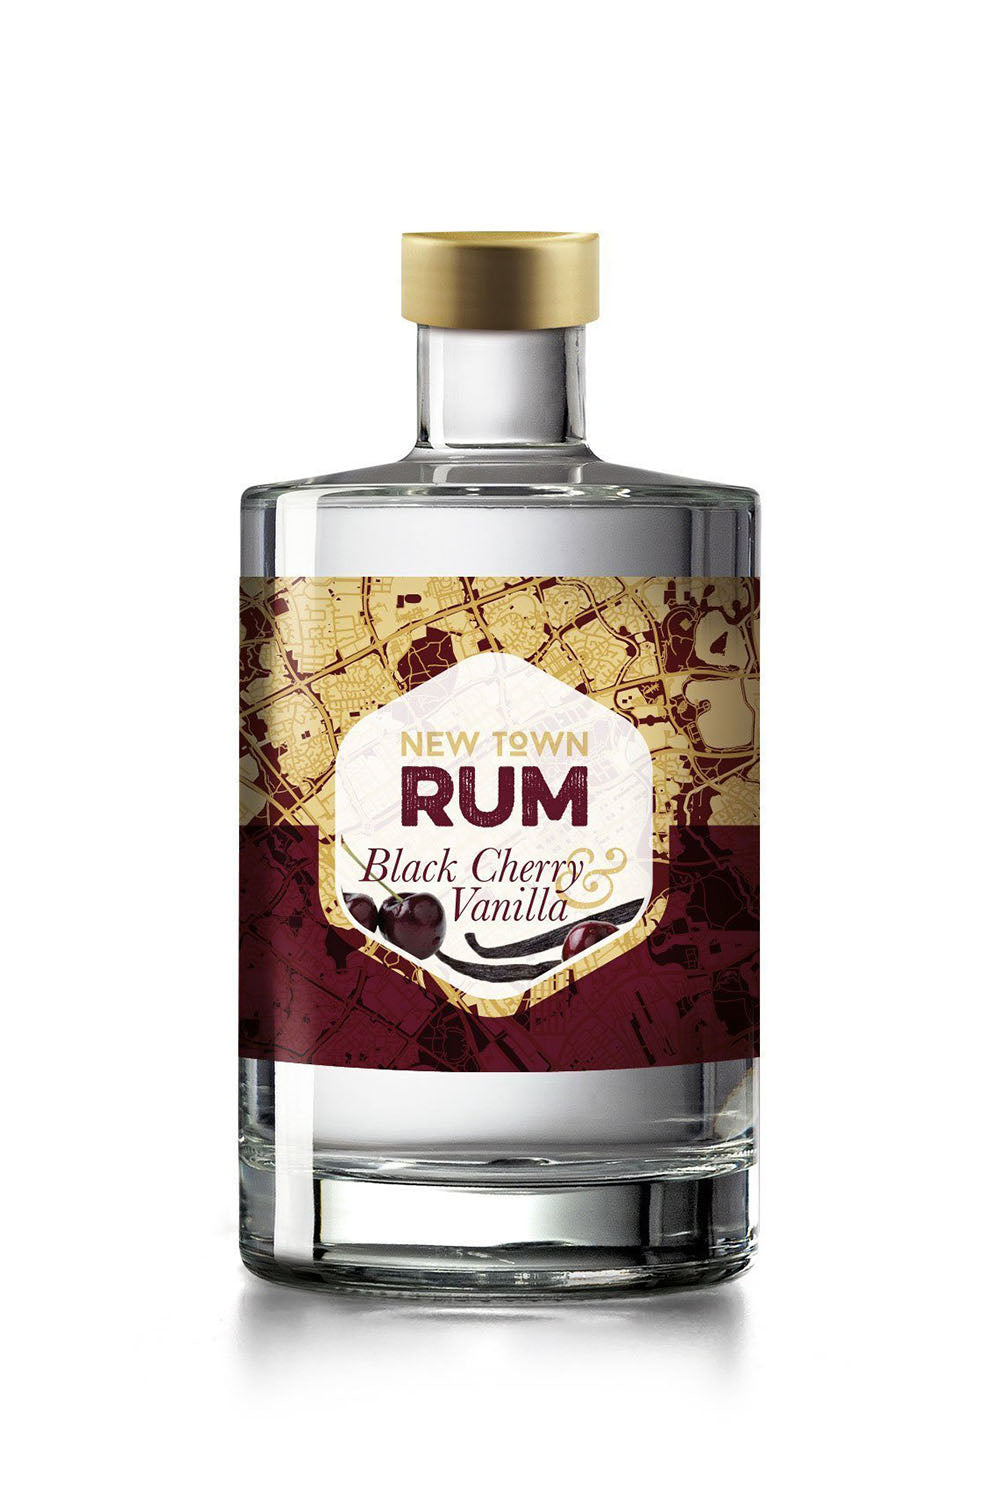 New Town Rum, Black Cherry & Vanilla